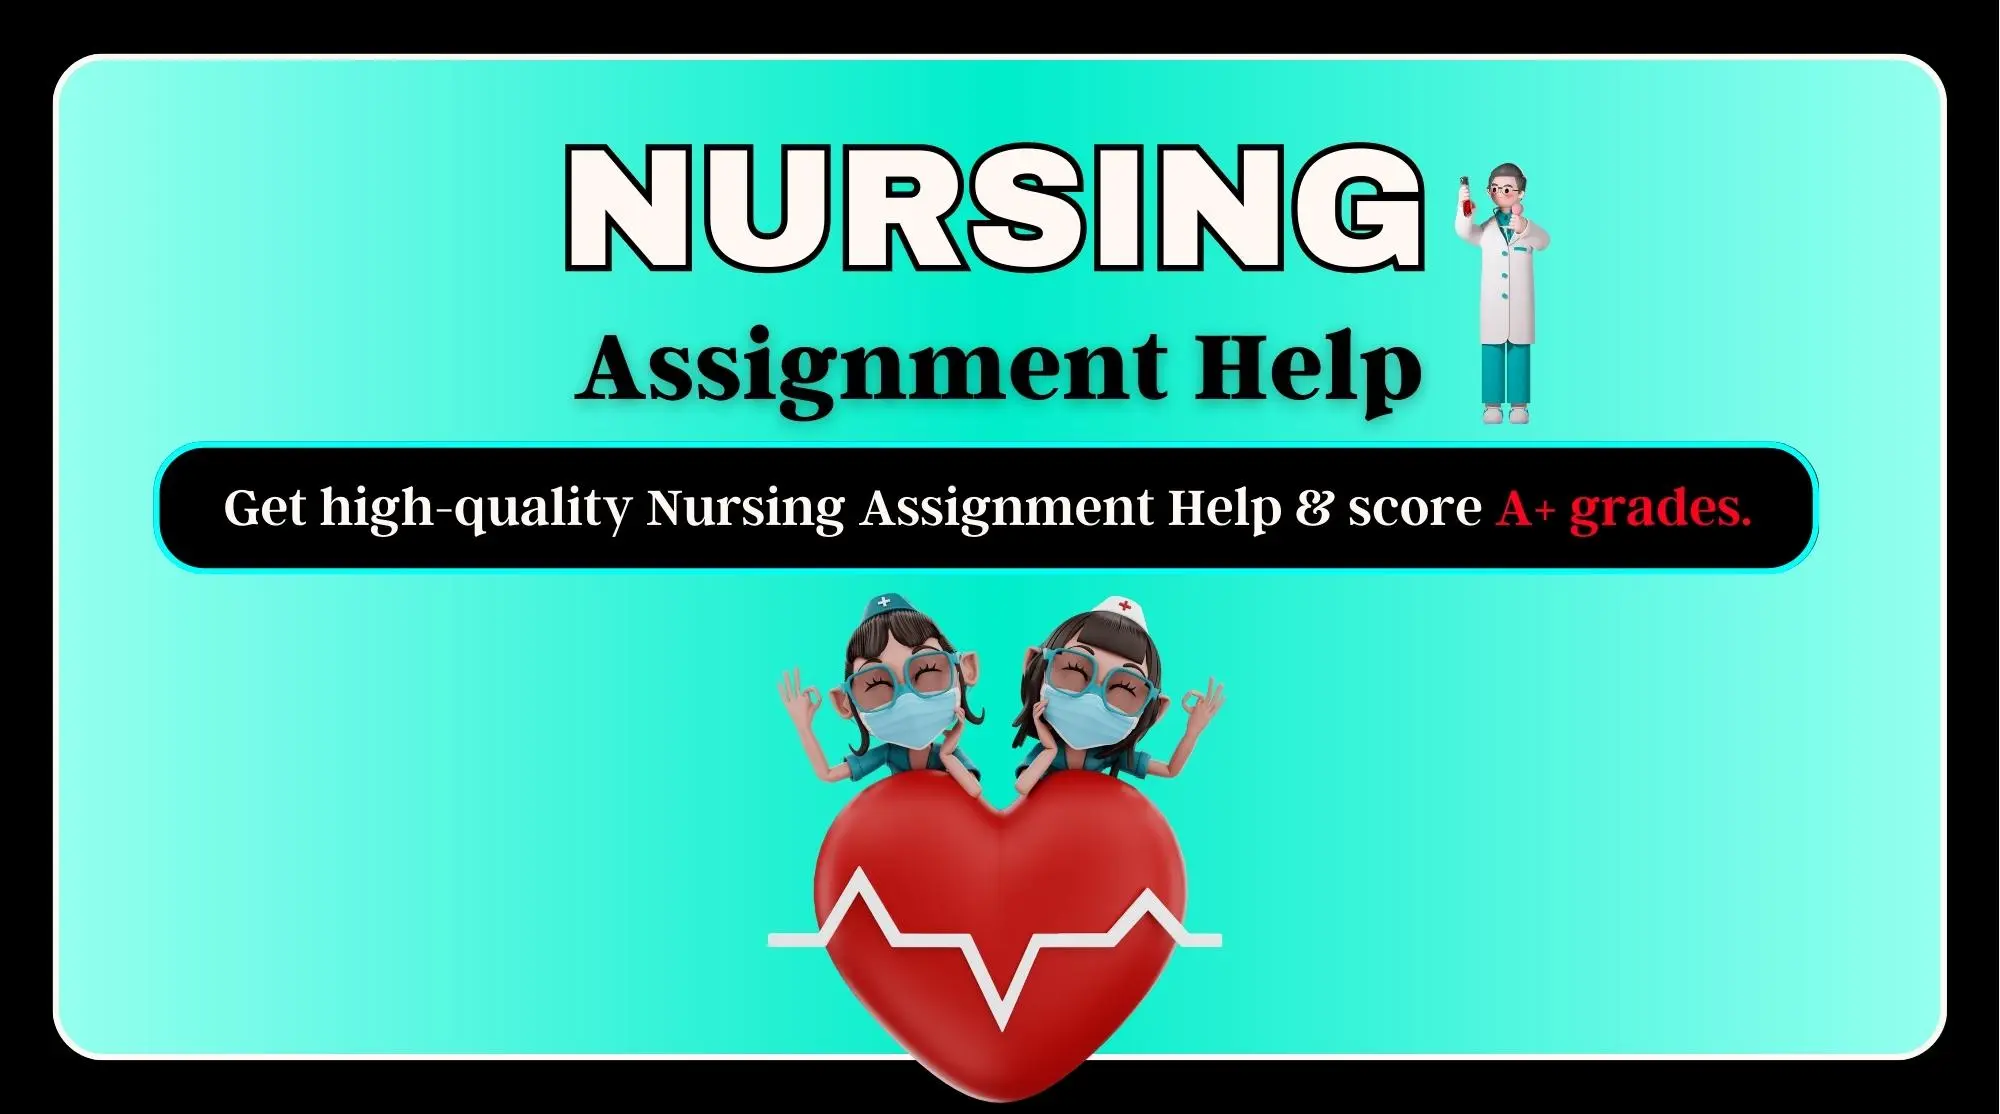 Nursing Assignment Help - High-Quality Assignment Help - Score Good Grades